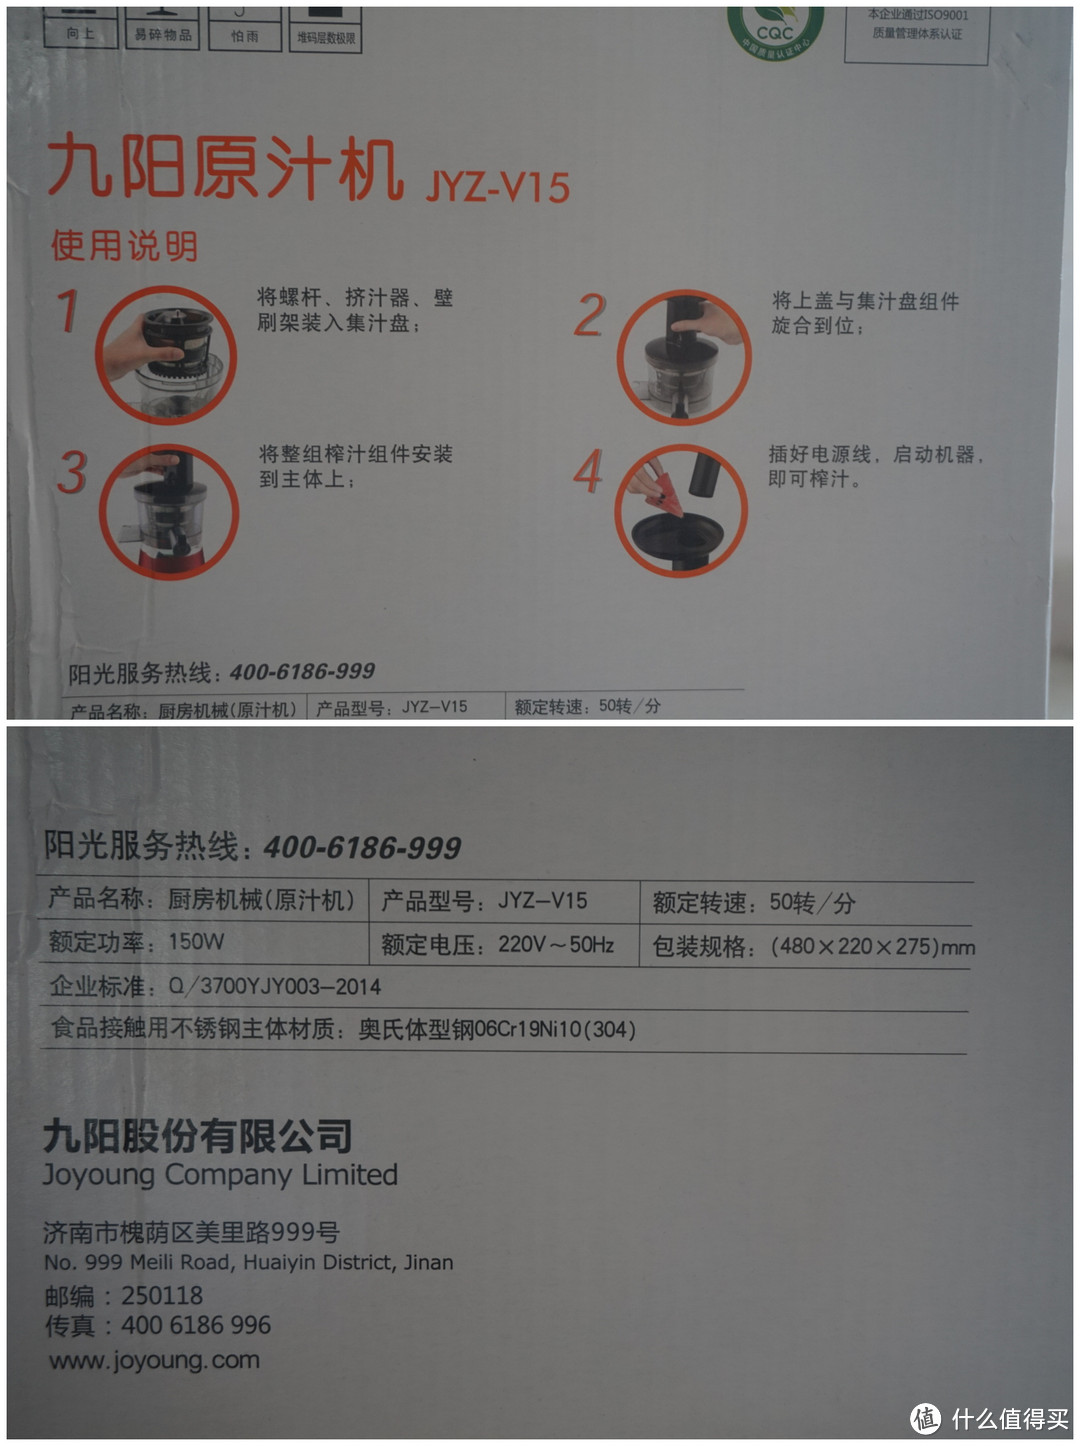 #细说家电# Joyoung 九阳 JYZ-V15 原汁机使用 简评